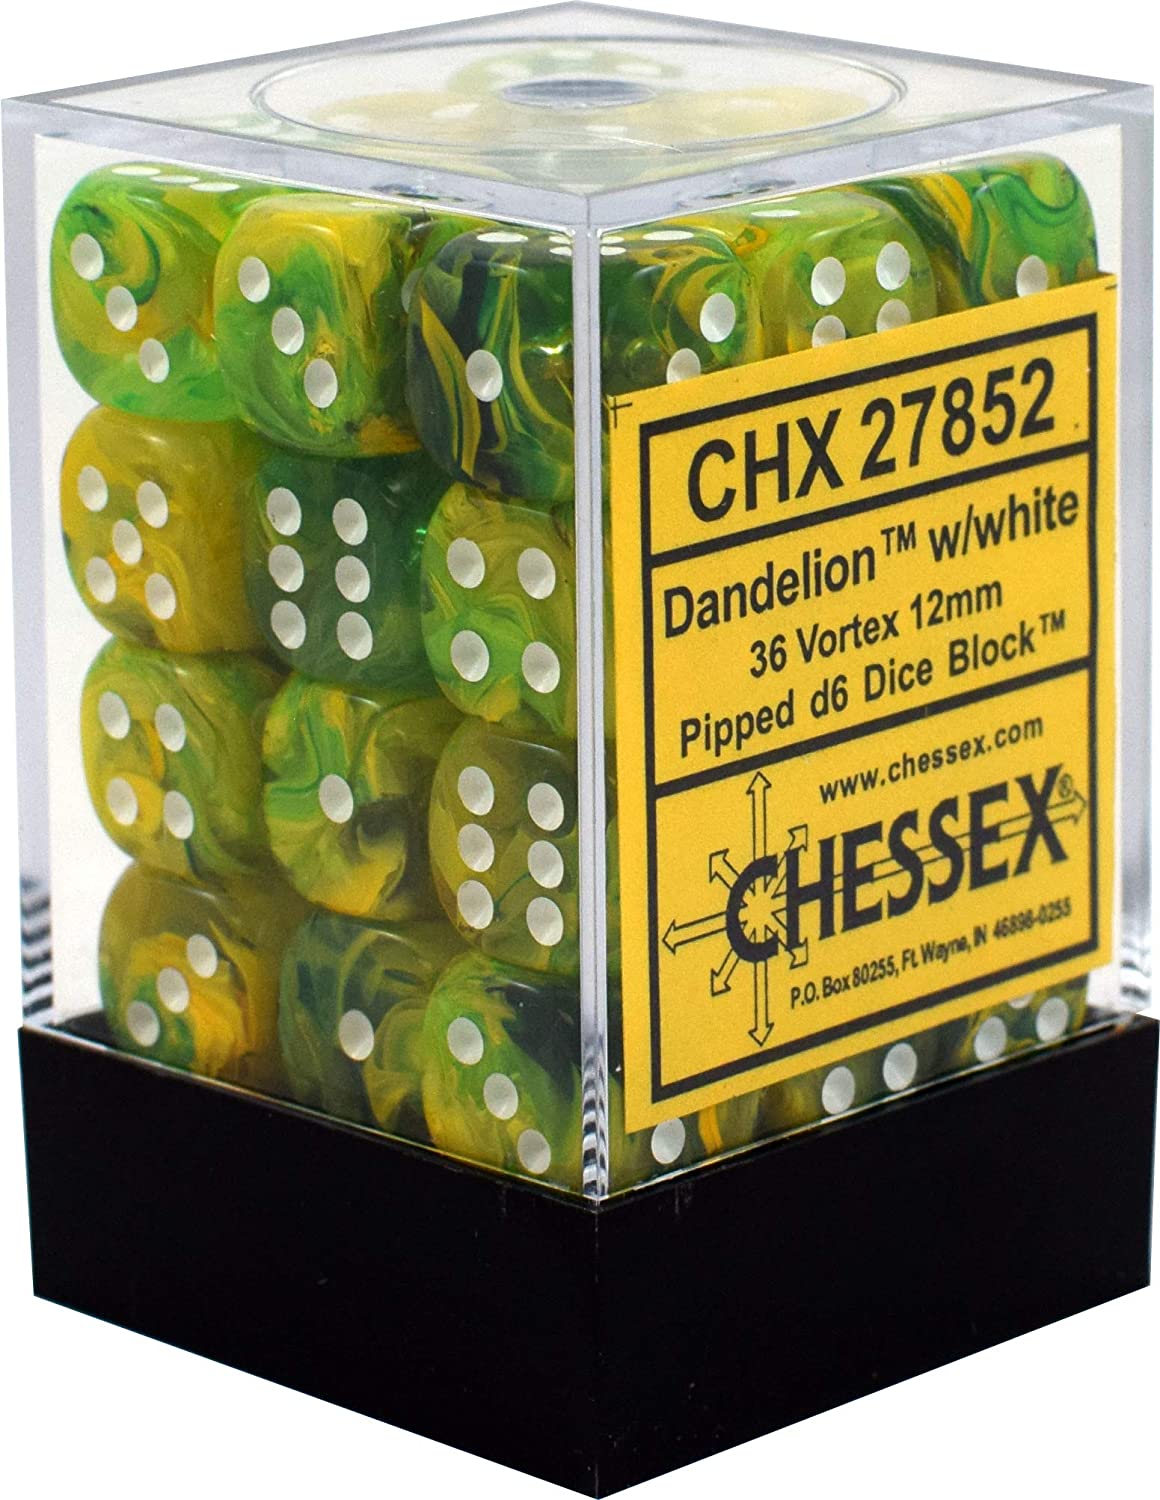 Chessex Vortex 12mm D6 Dice Block (36-Dice)